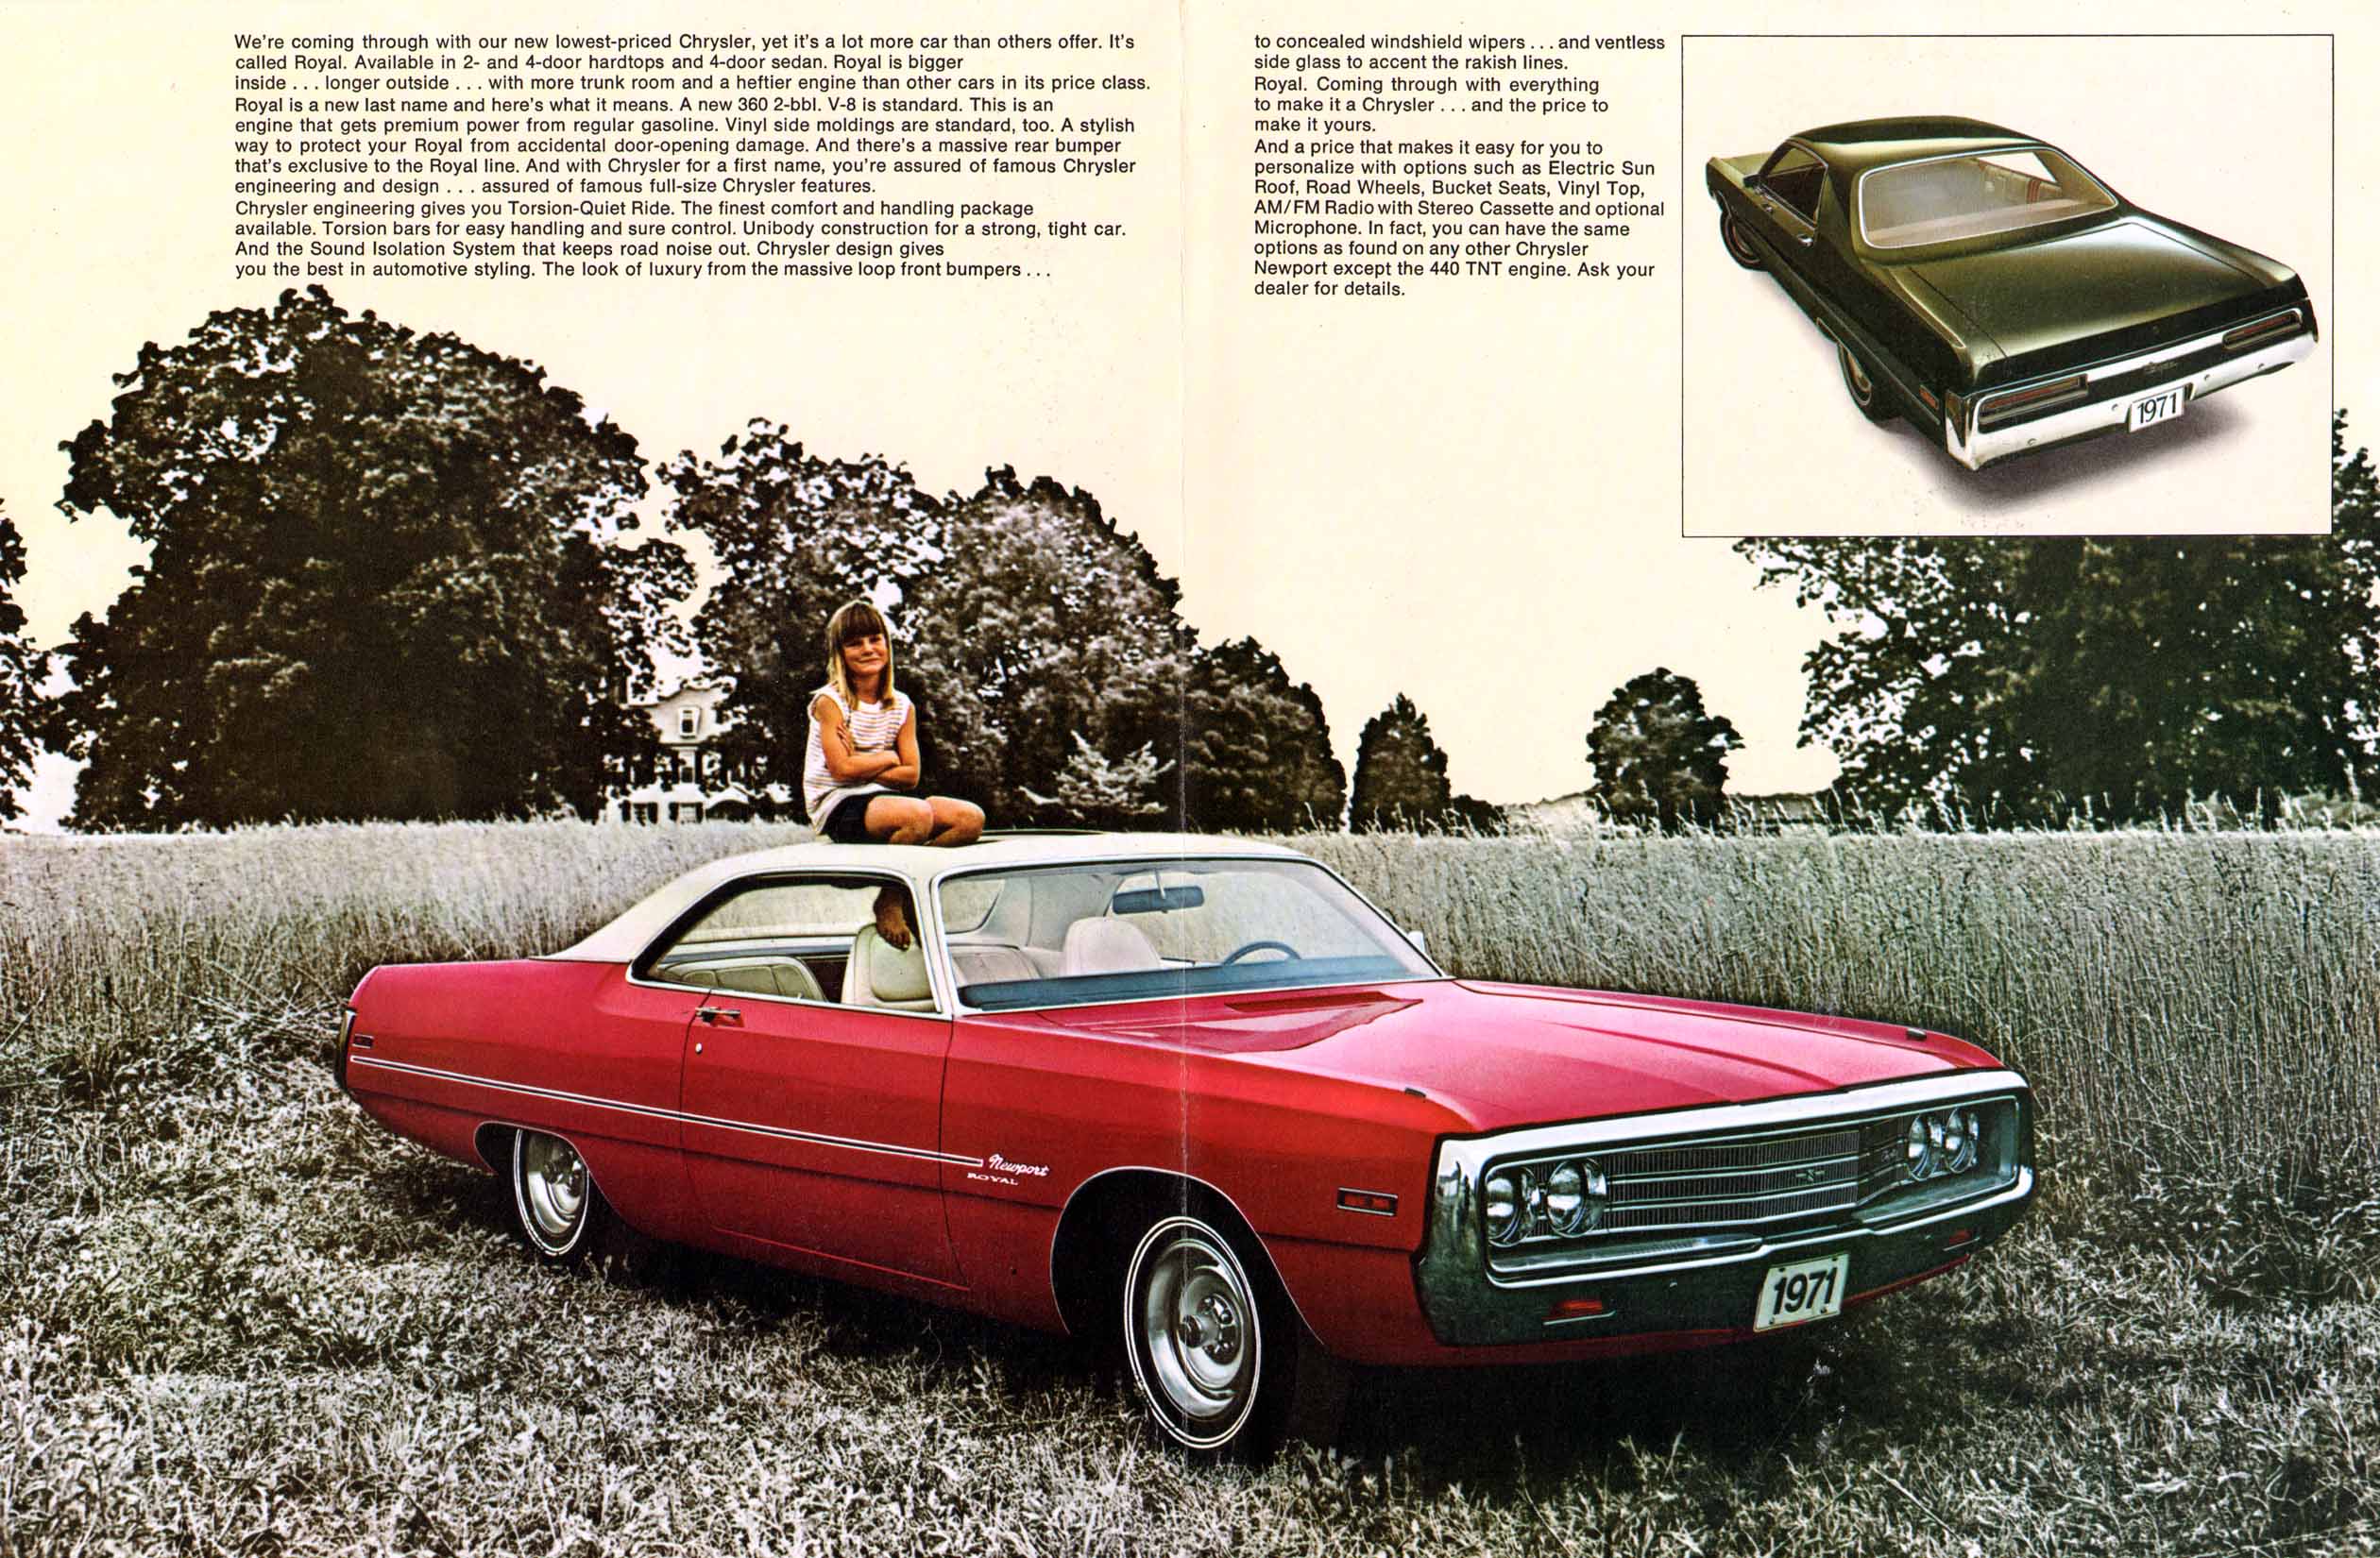 1971 Chrysler Royal Folder-02-03